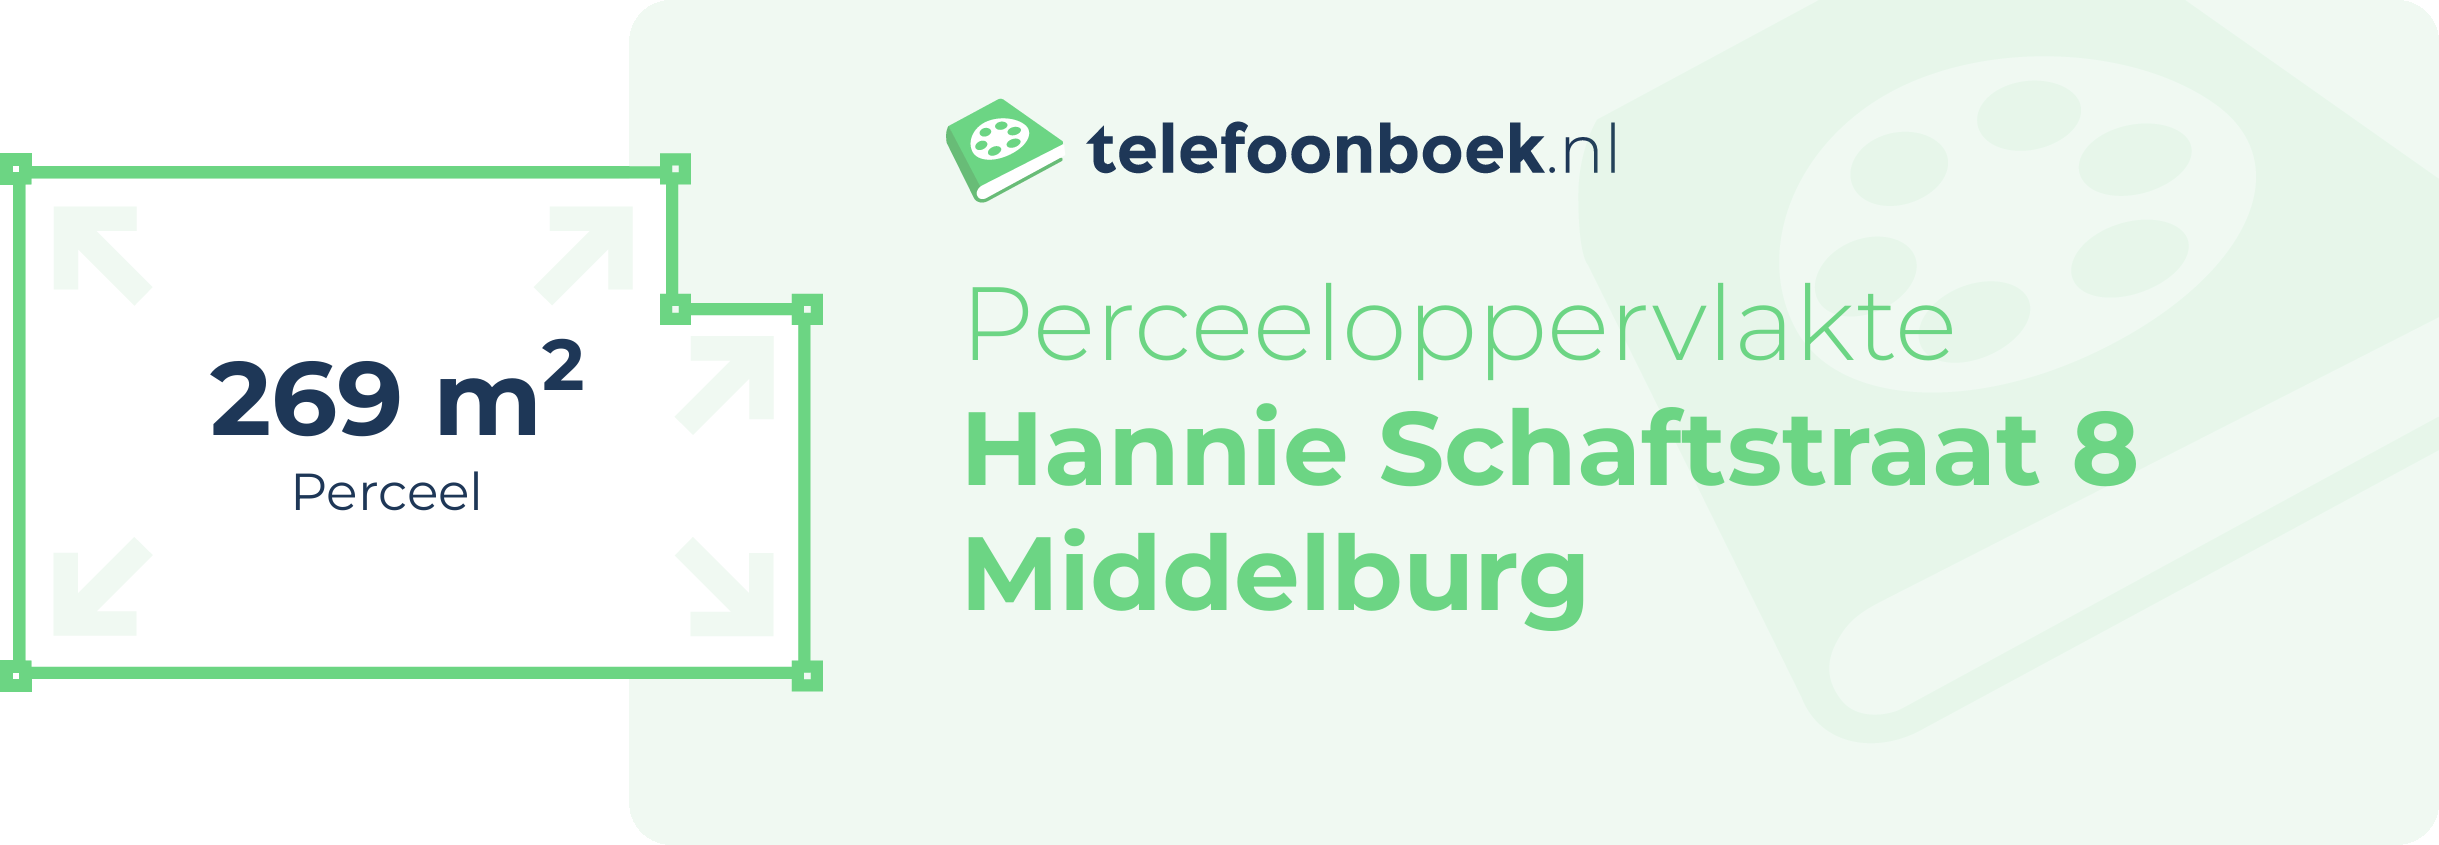 Perceeloppervlakte Hannie Schaftstraat 8 Middelburg